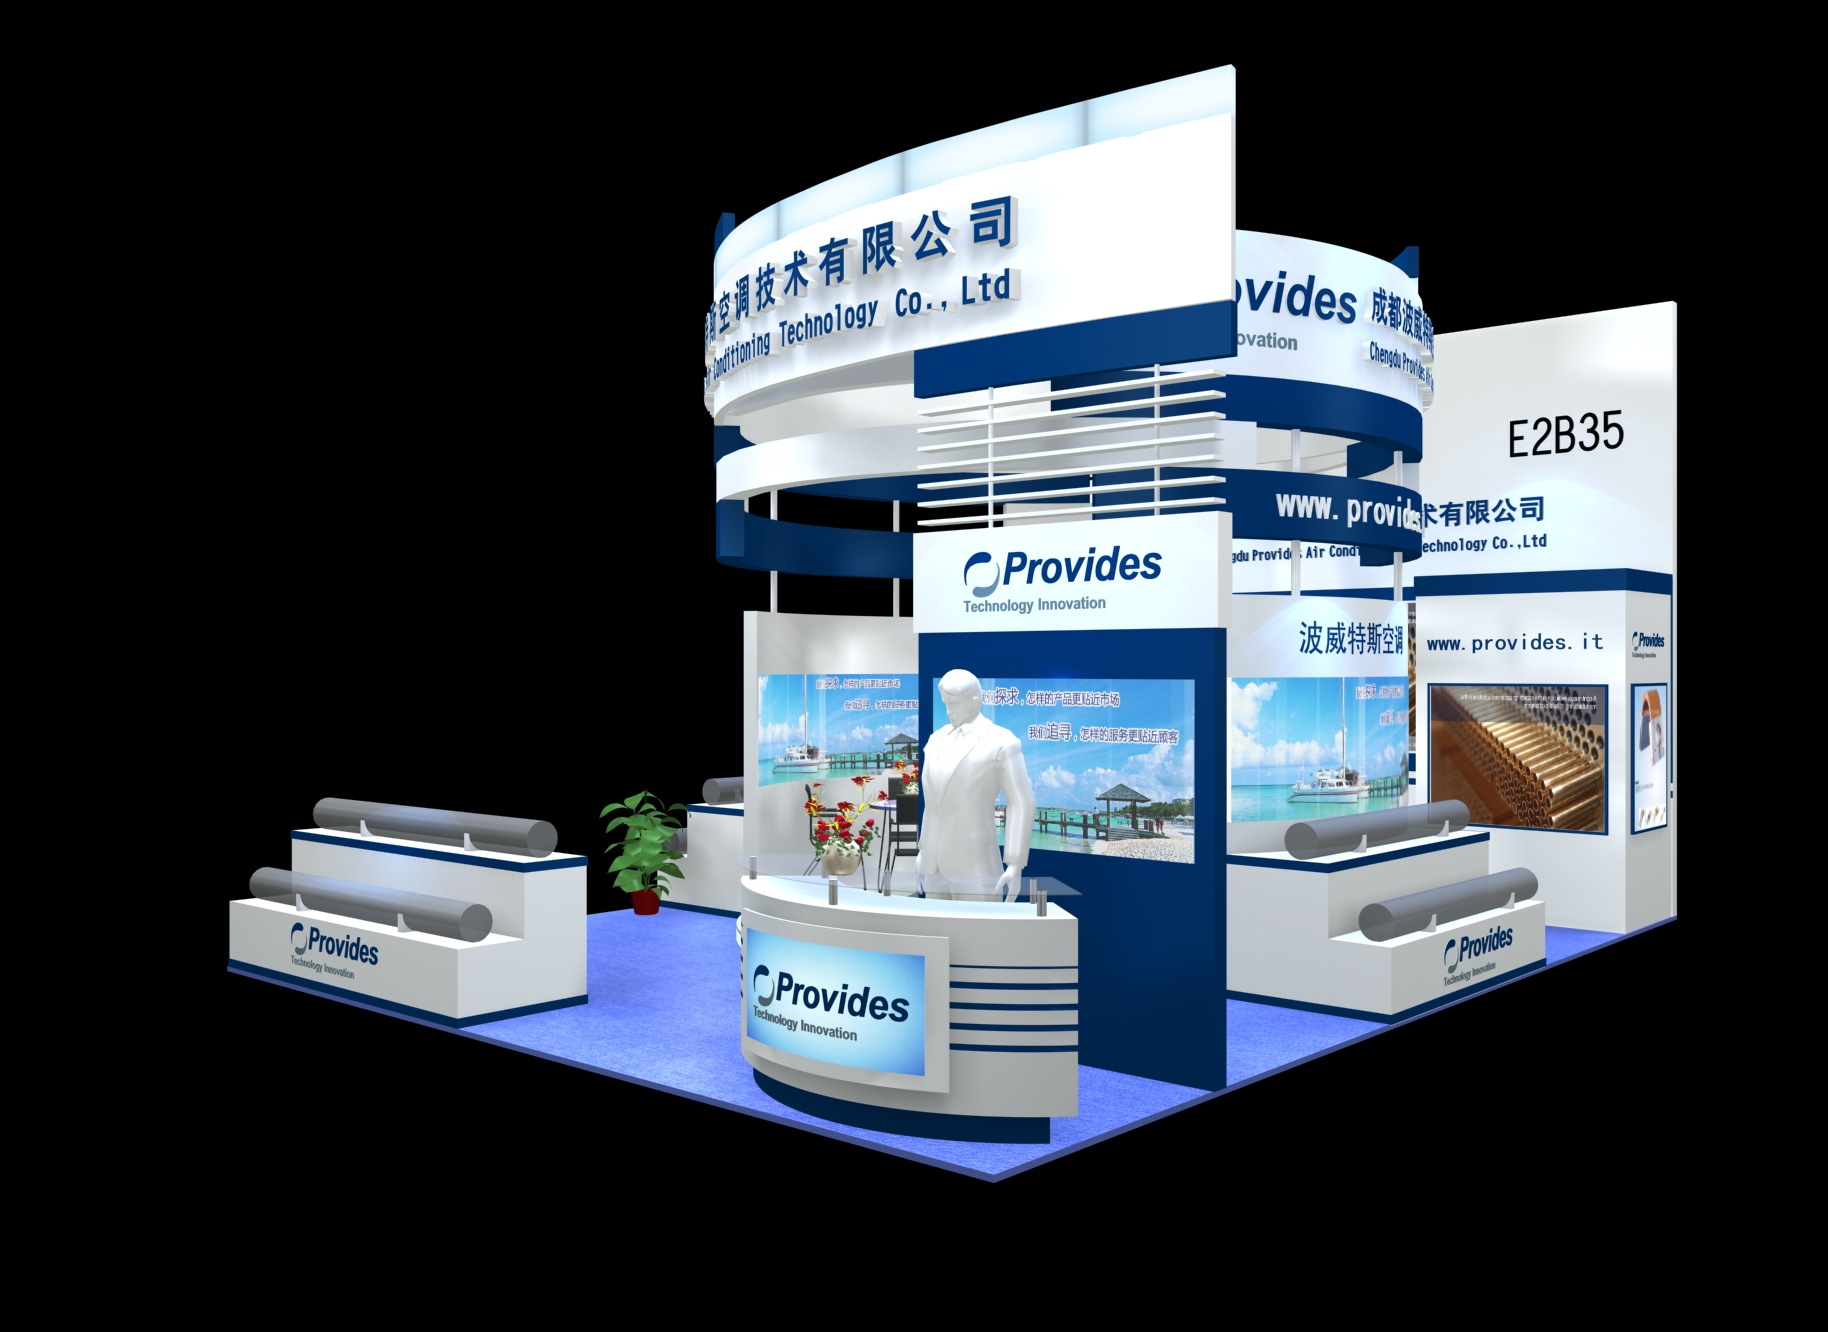 广州展台搭建工厂提供展览会效果图设计搭建一站式服务